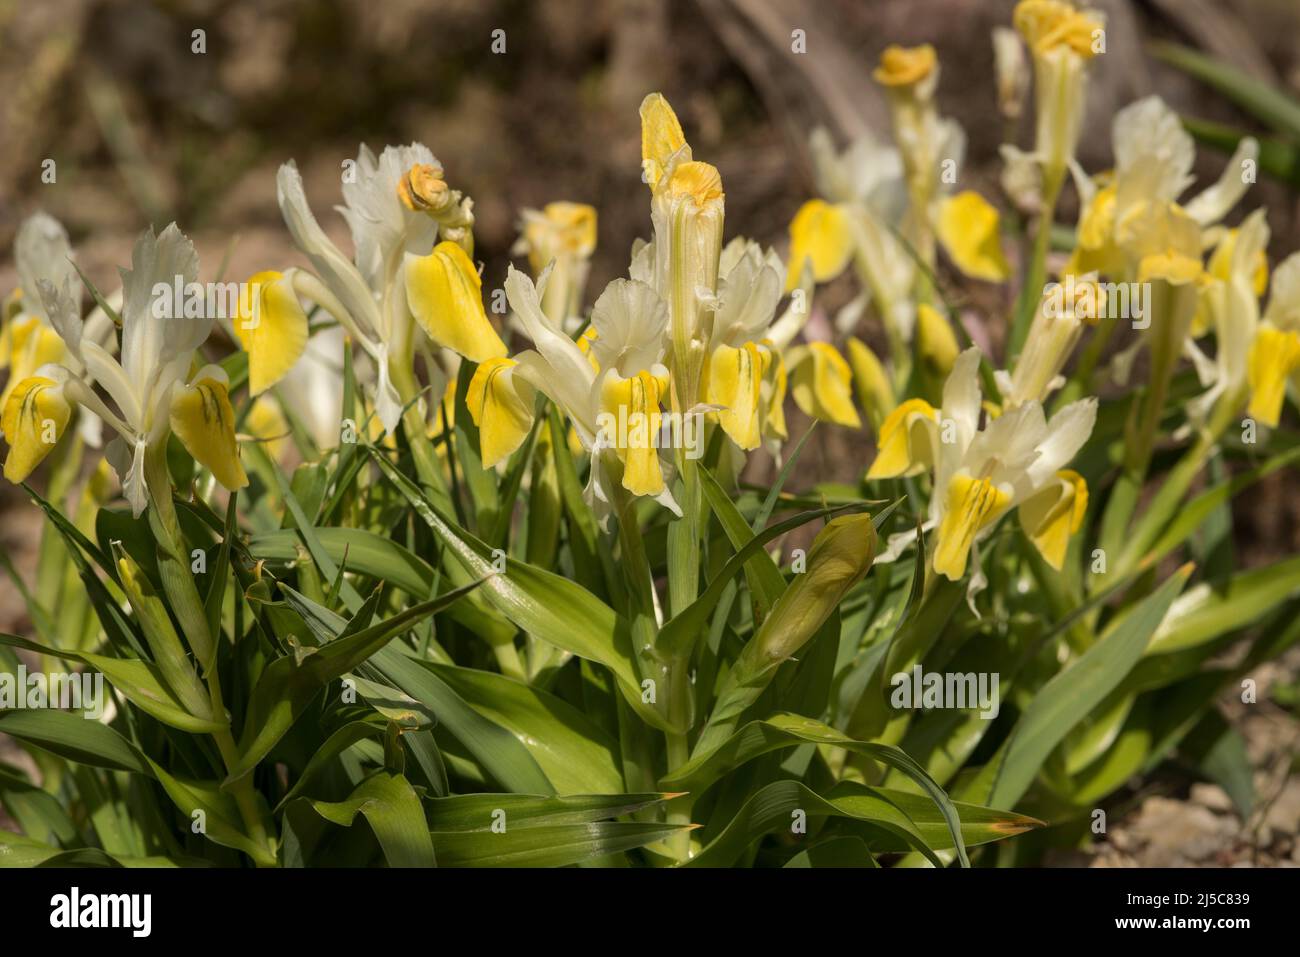 Leuchtend gelbe Blüten der Buchara Iris - Iris Bucharica (auch bekannt als Maisblatt-Iris und gehörnte Iris), ein Mitglied der Iridaceae-Familie. Stockfoto